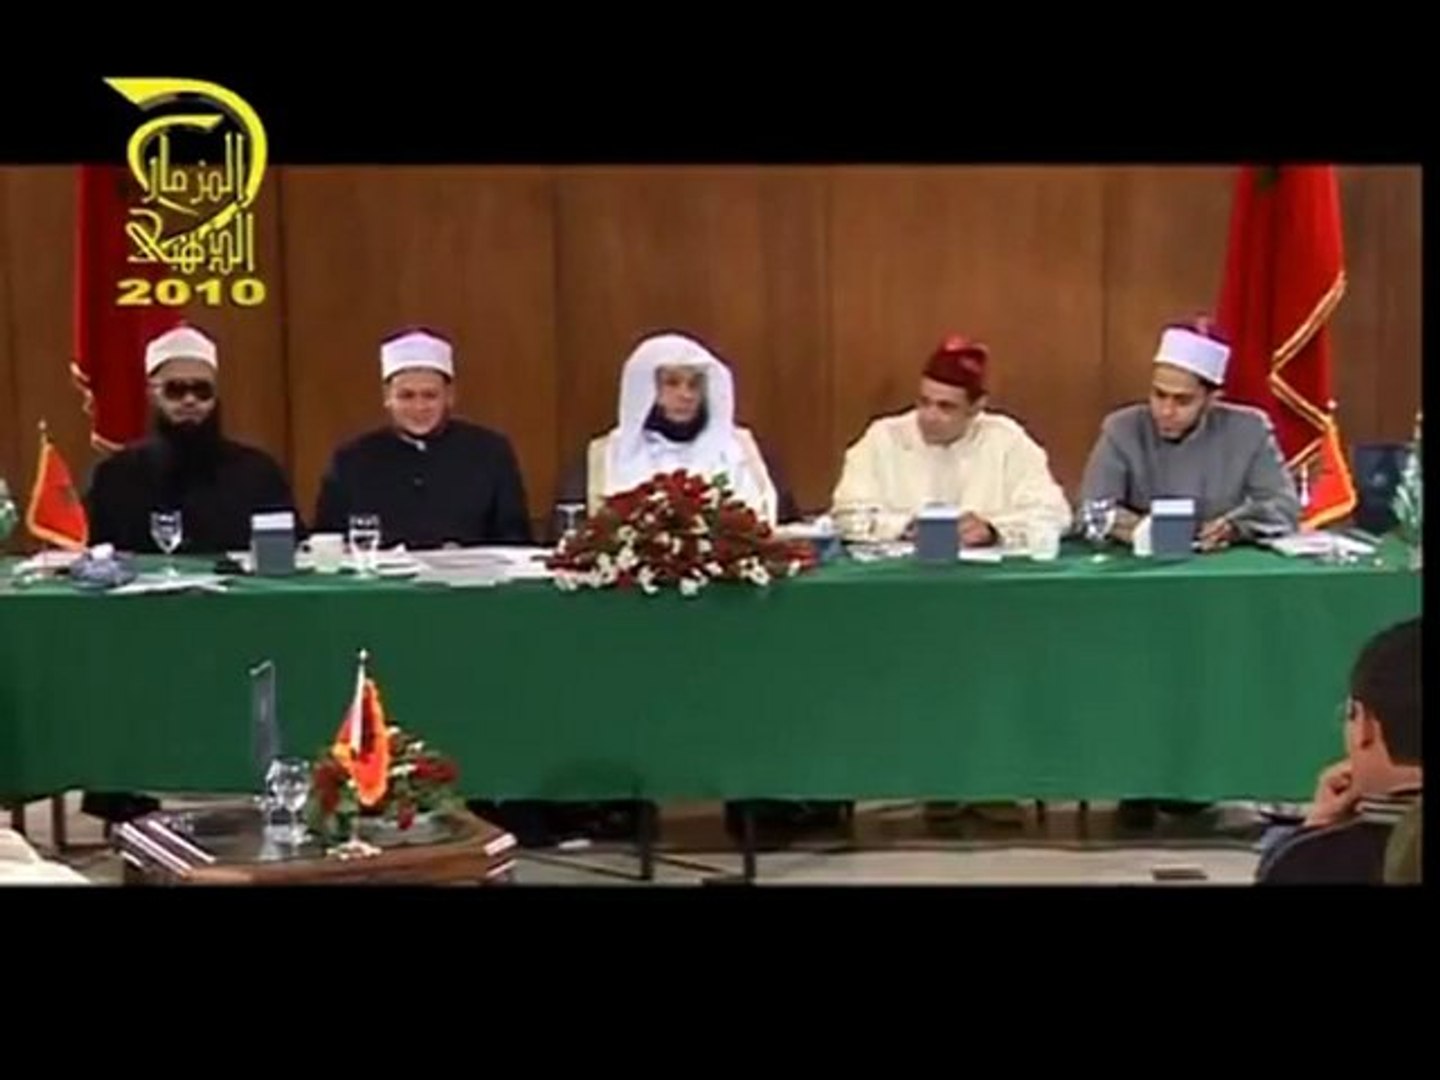 Al-Mizmar Dahabi Maroc - هشام الراجعي - مسابقة المزمار الذهبي بالمغرب -  Vidéo Dailymotion